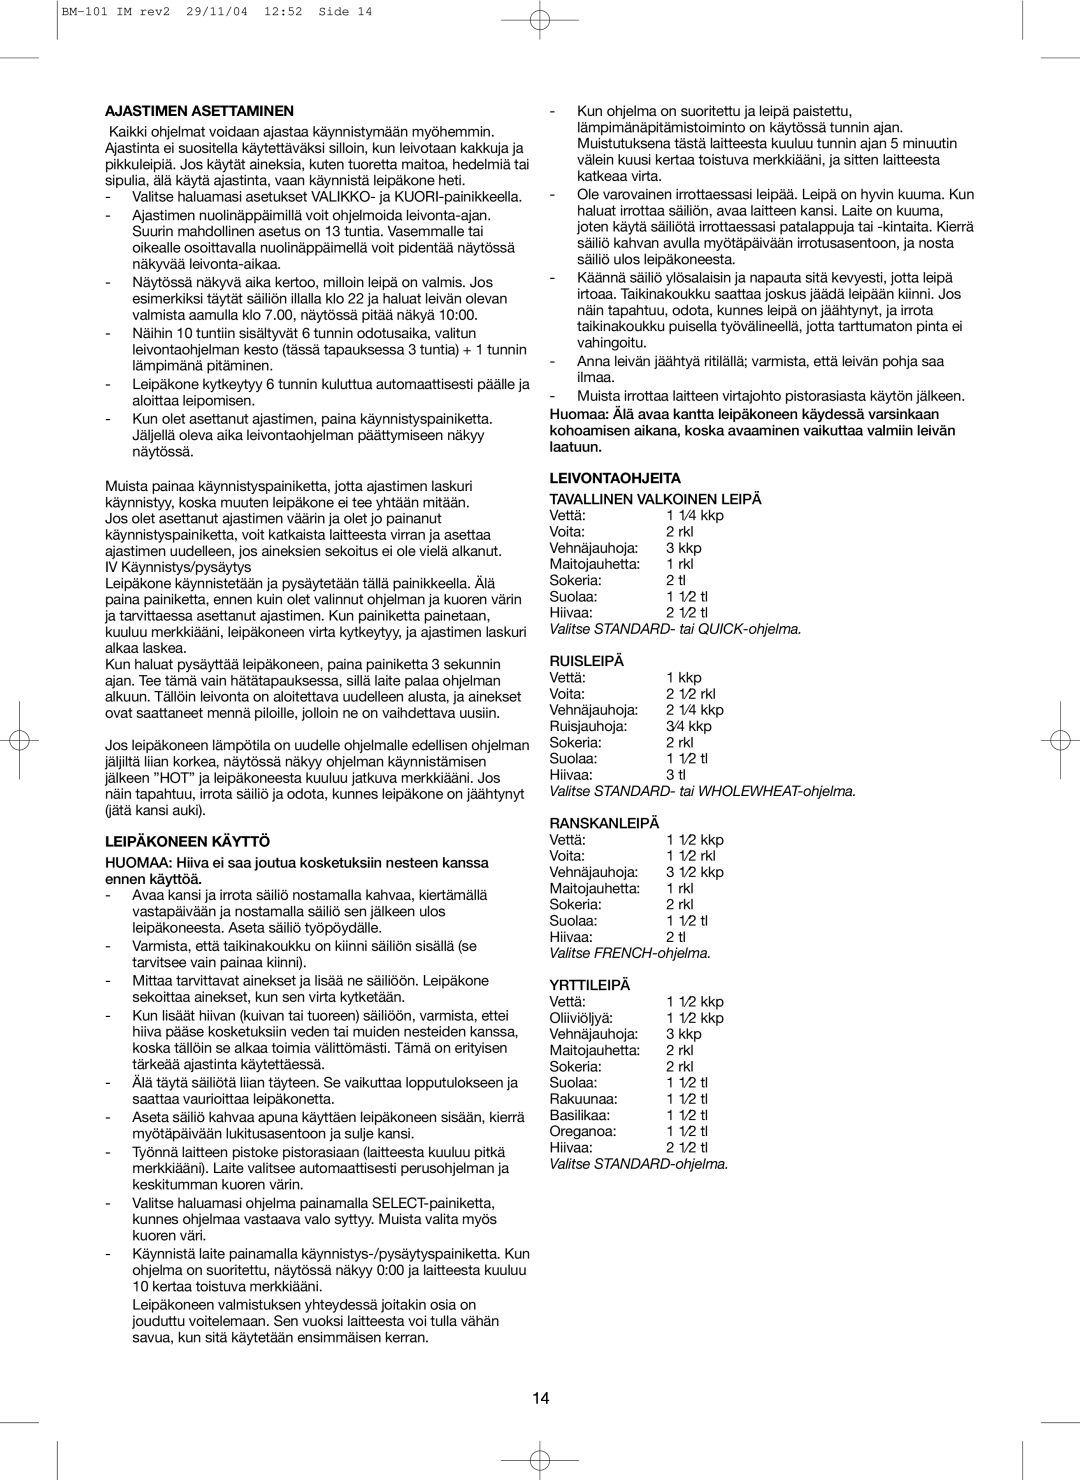 Melissa 643-042 manual Ajastimen Asettaminen, Leipäkoneen Käyttö, Leivontaohjeita, Valitse STANDARD- tai QUICK-ohjelma 